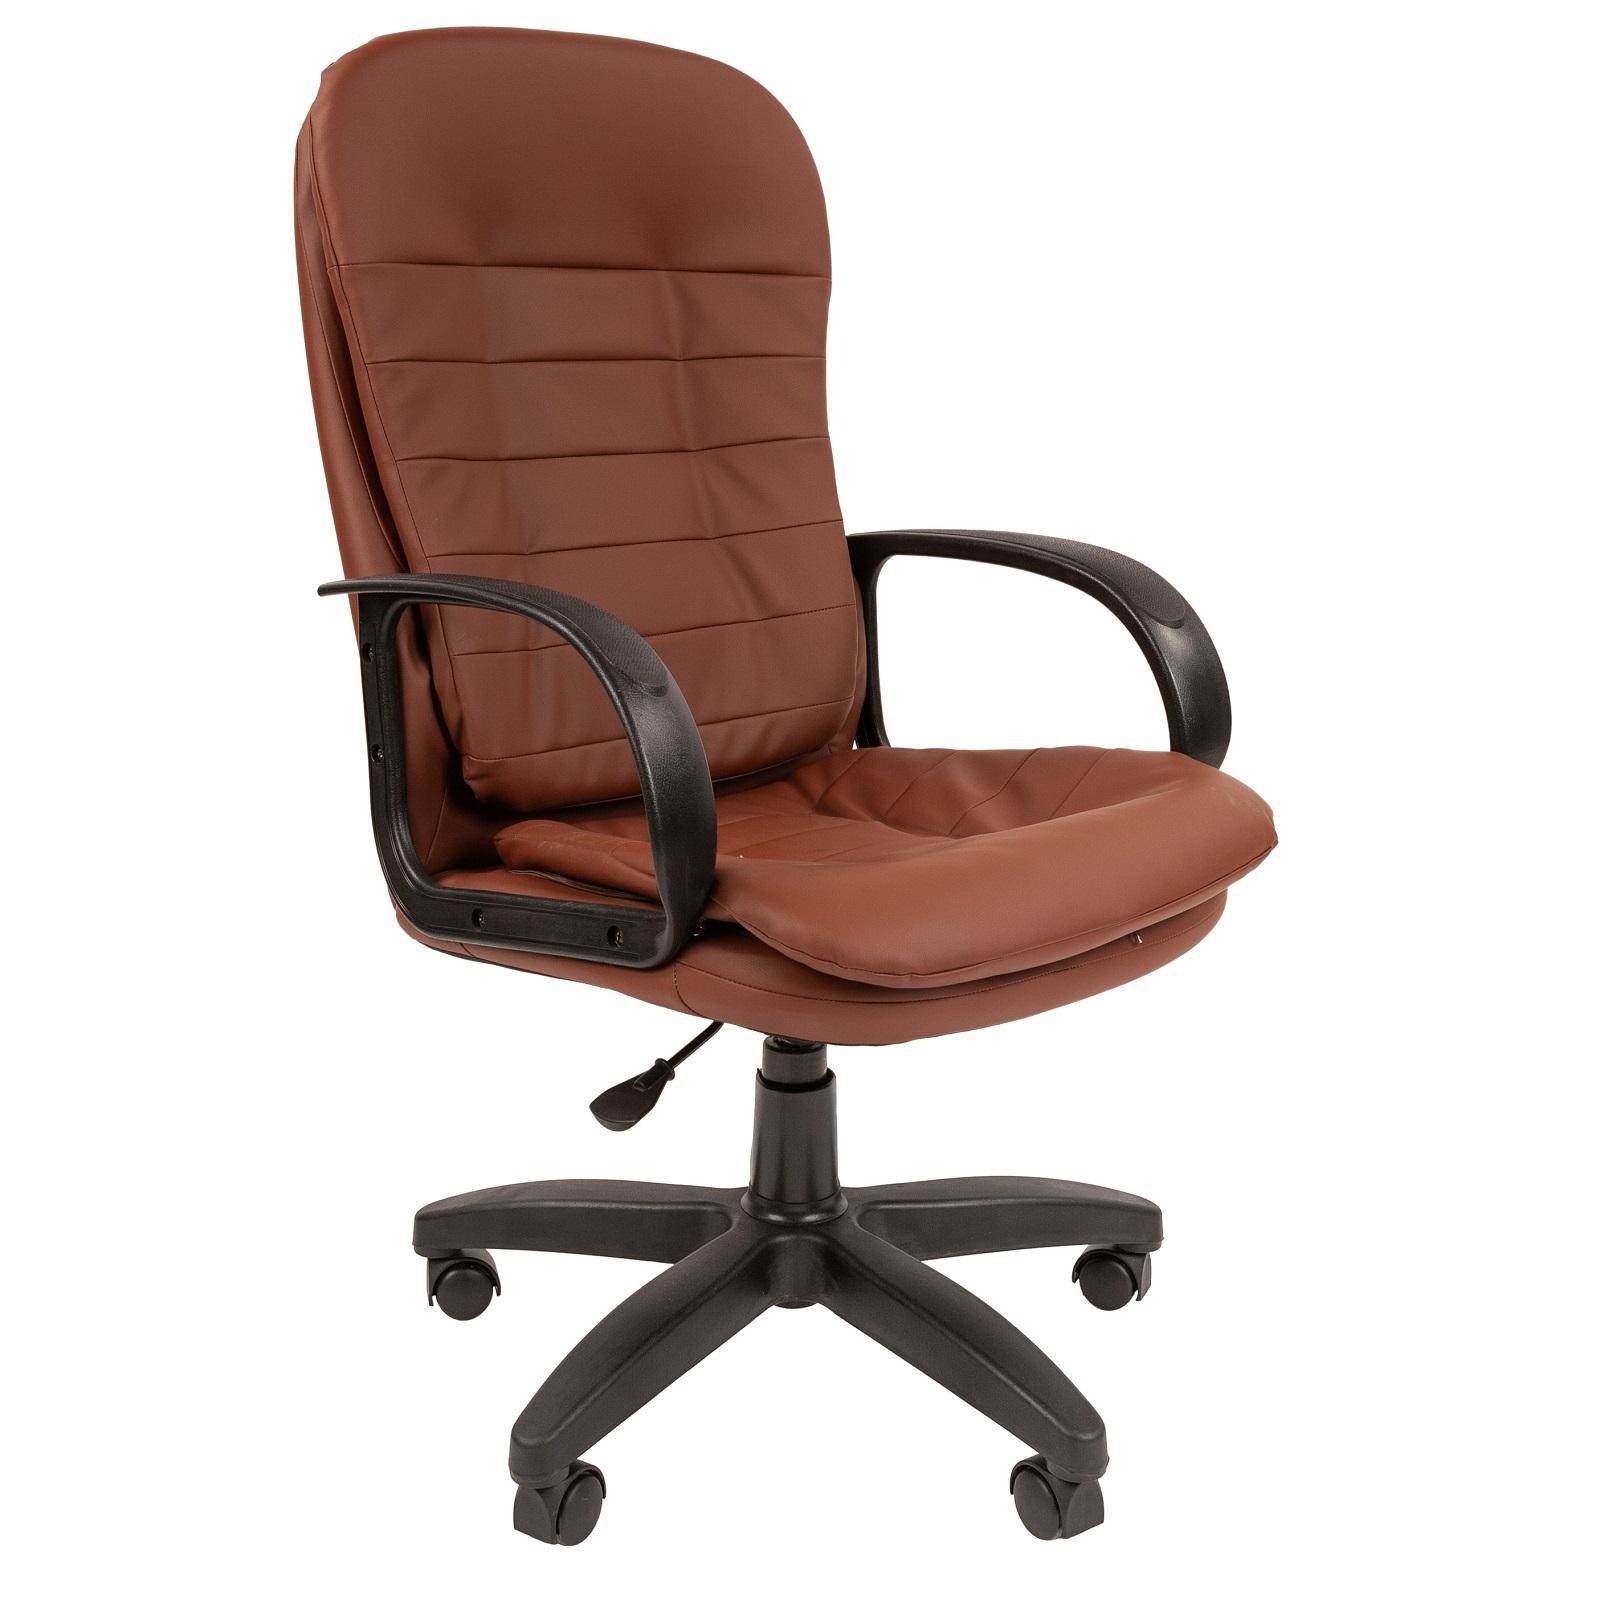 90489172 Офисное кресло Ст-95 экокожа цвет коричневый STLM-0248872 СТАНДАРТ